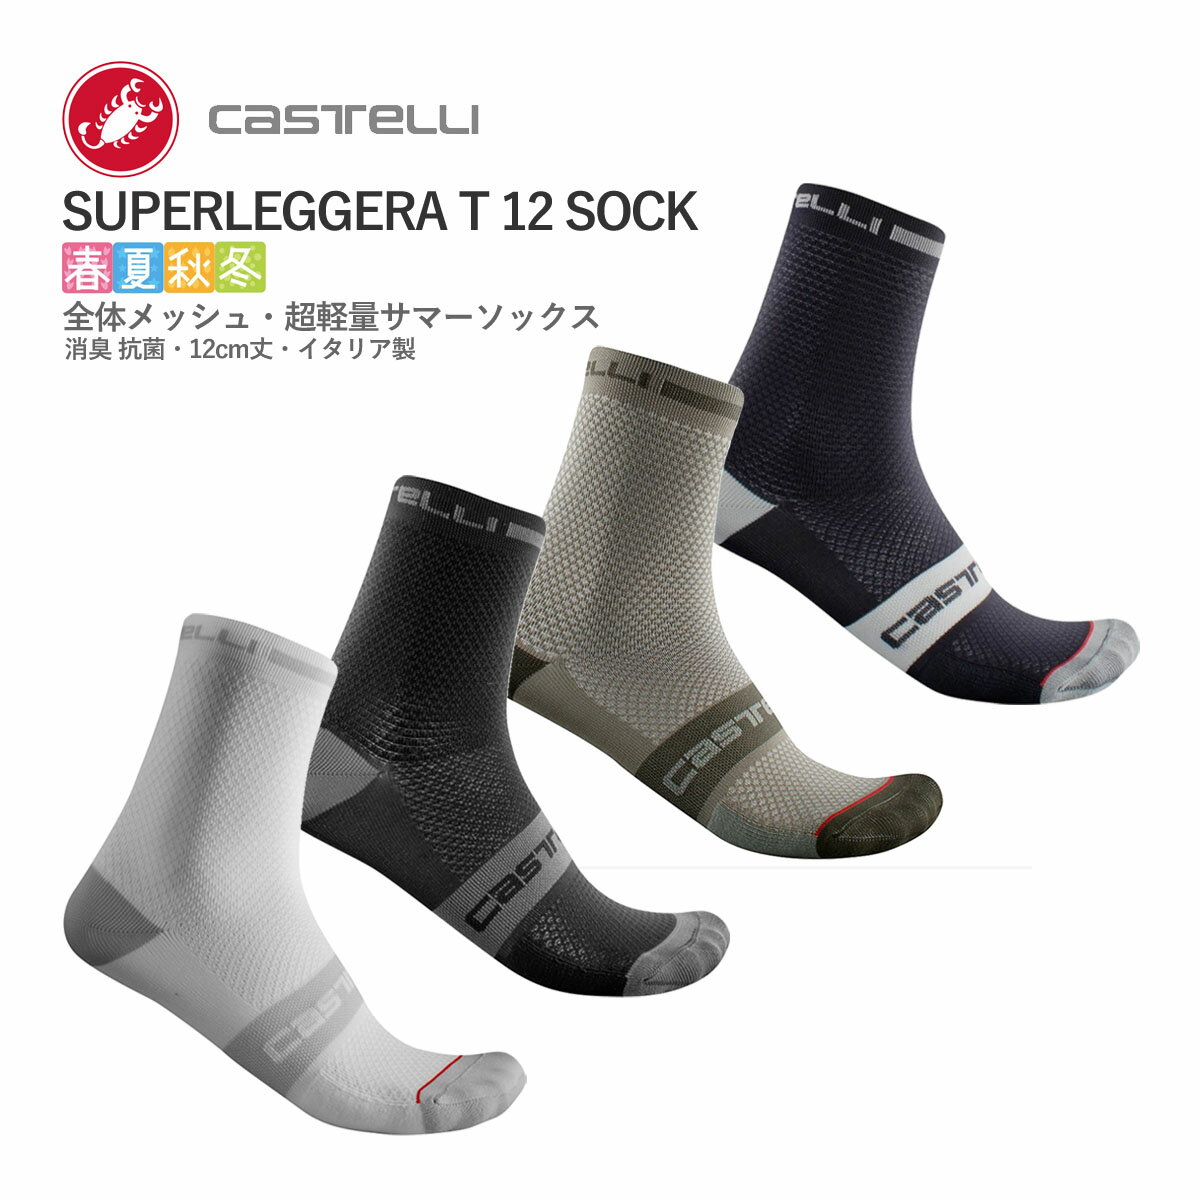 CASTELLI 21030 SUPERLEGGERA T 12 SOCK カステリ スーパーレジェーラ ソックス